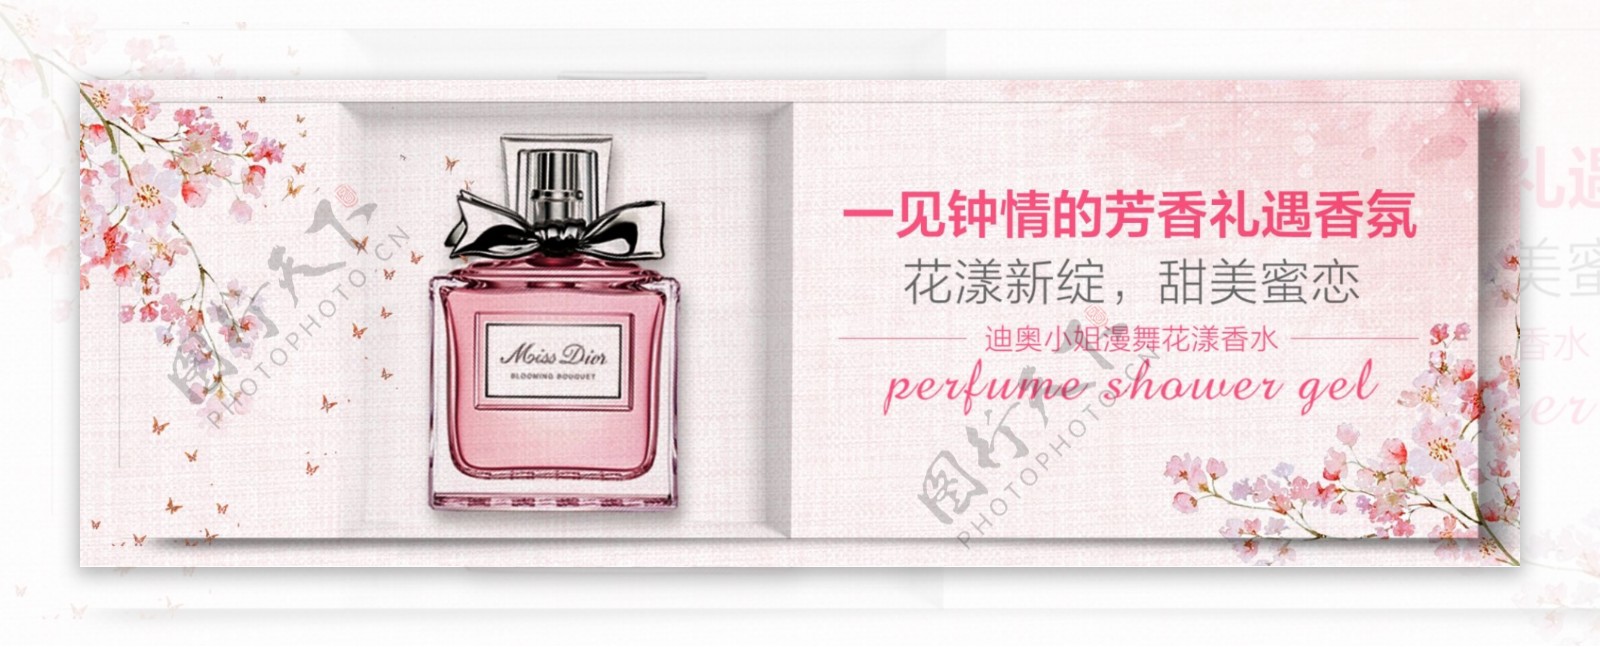 电商淘宝女性化妆品品牌香水海报模板粉色banner